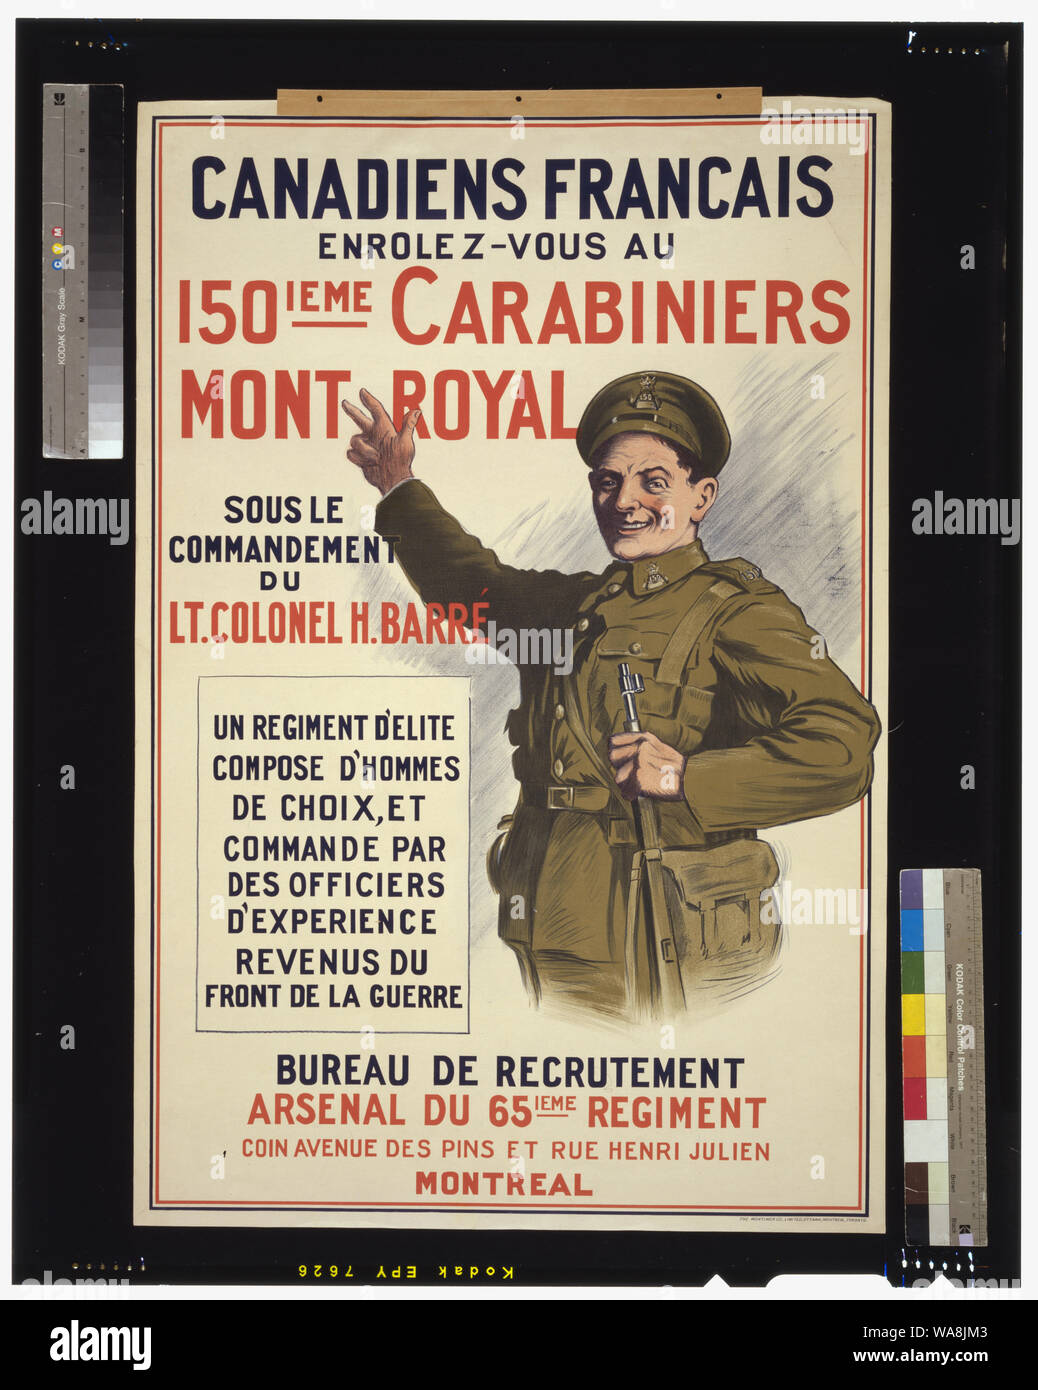 Canadiens Francais. Enrolez-vous au 150ieme Carabiniers Mont Royal, sous le commandement du Lt. Colonel H. Barré Stock Photo